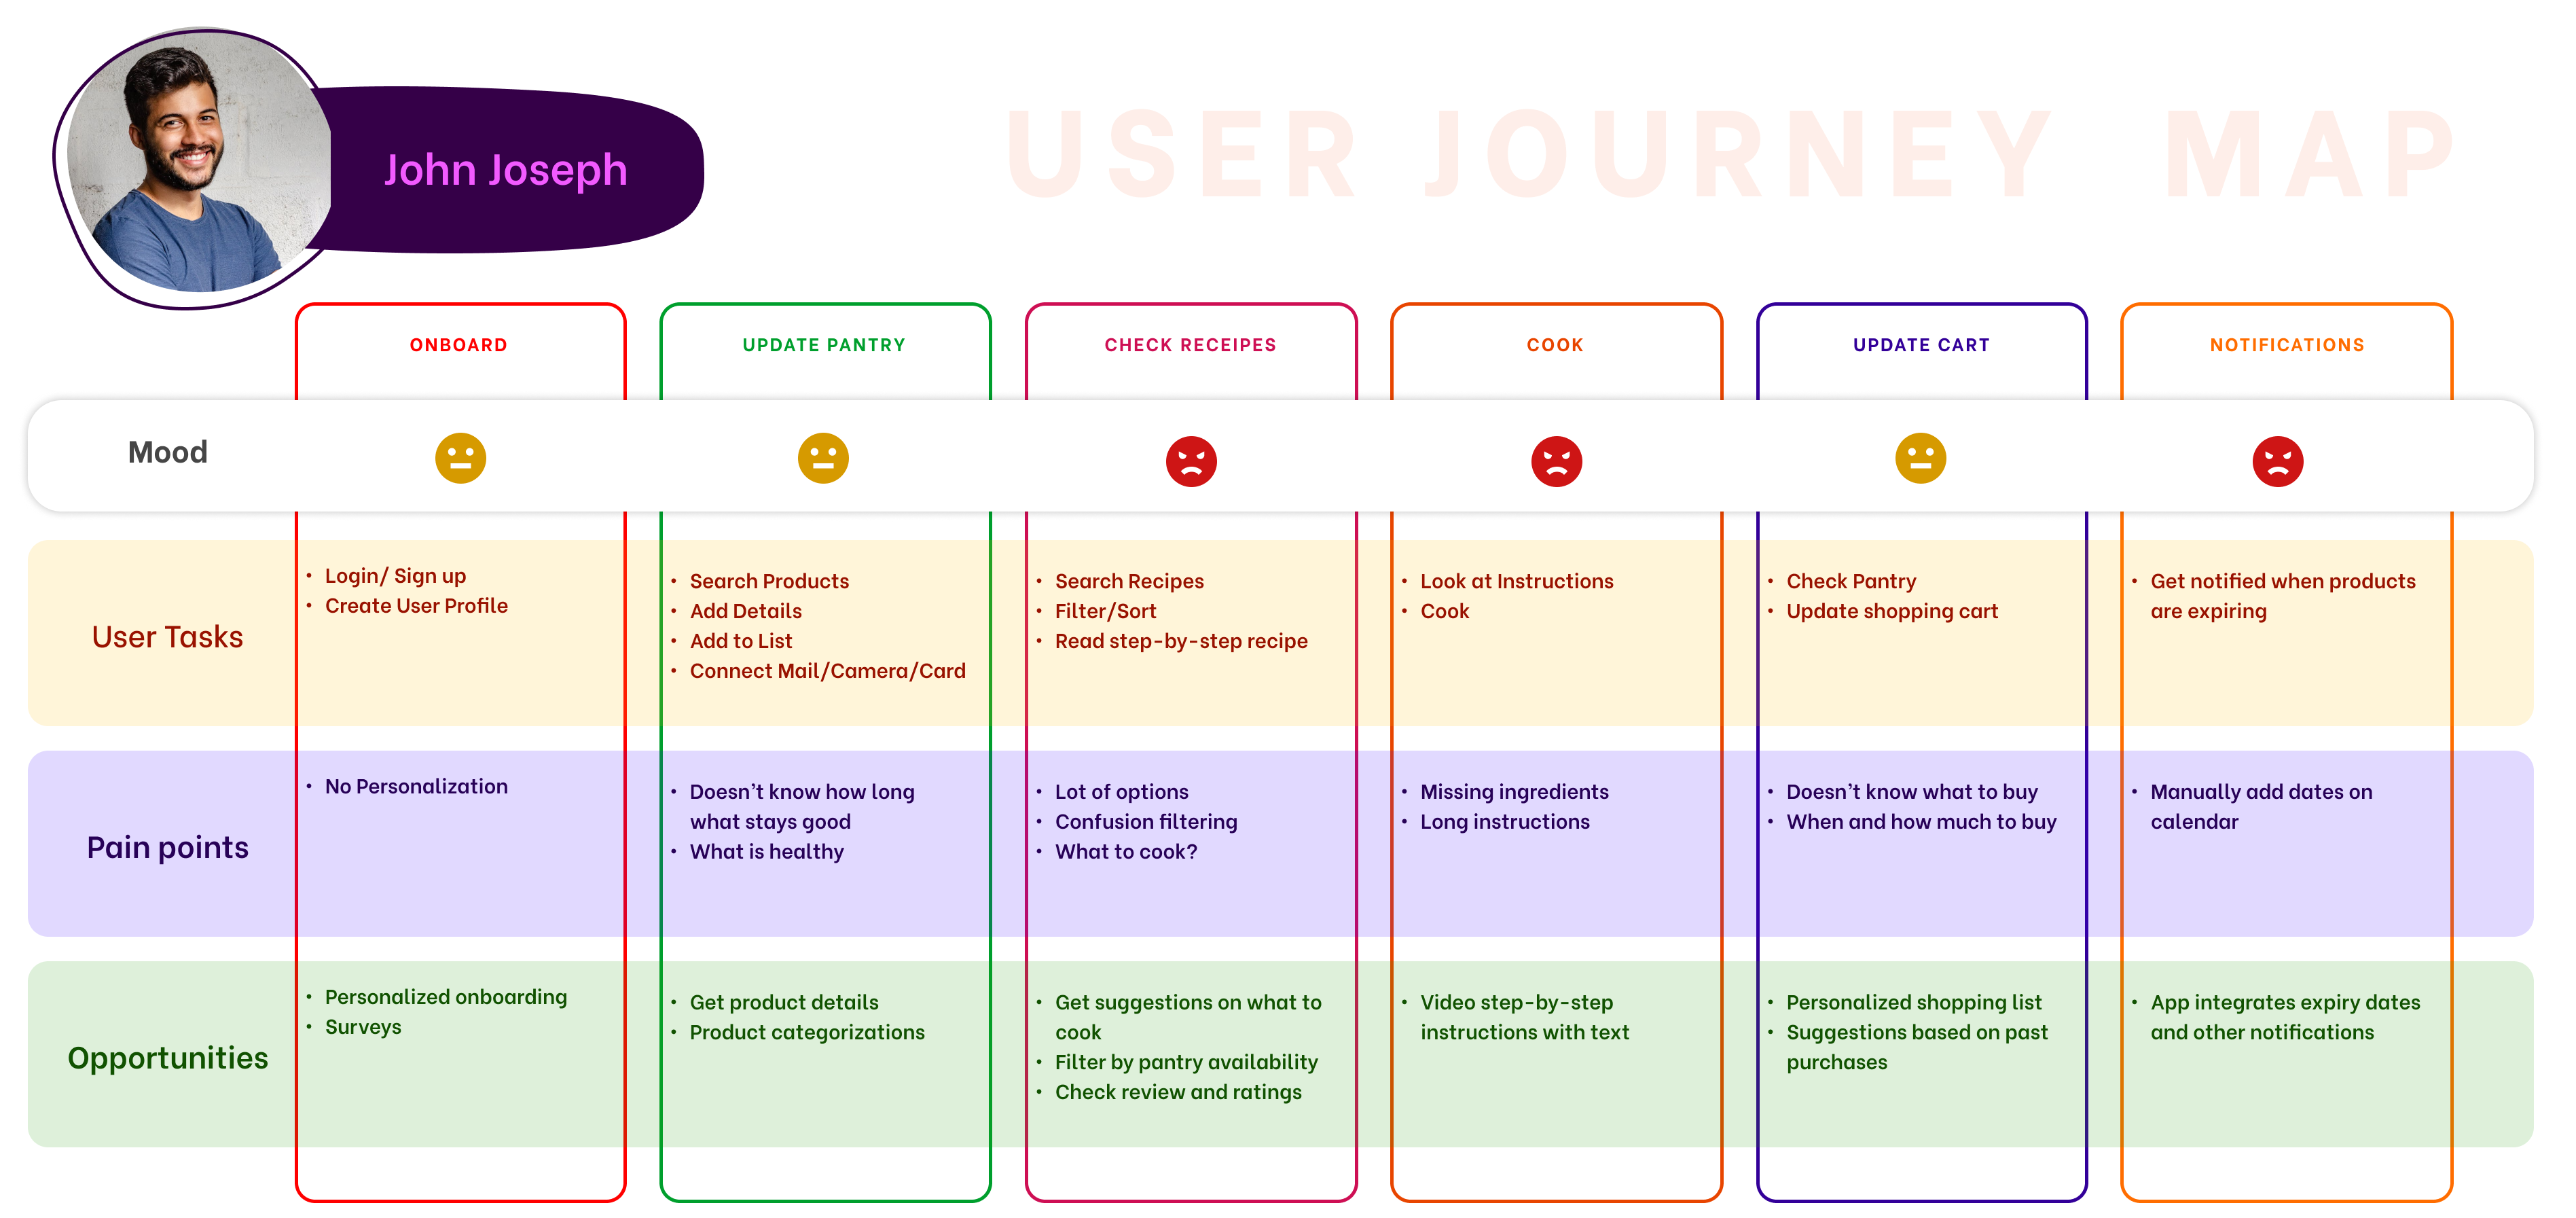 User Journey Diagram of John